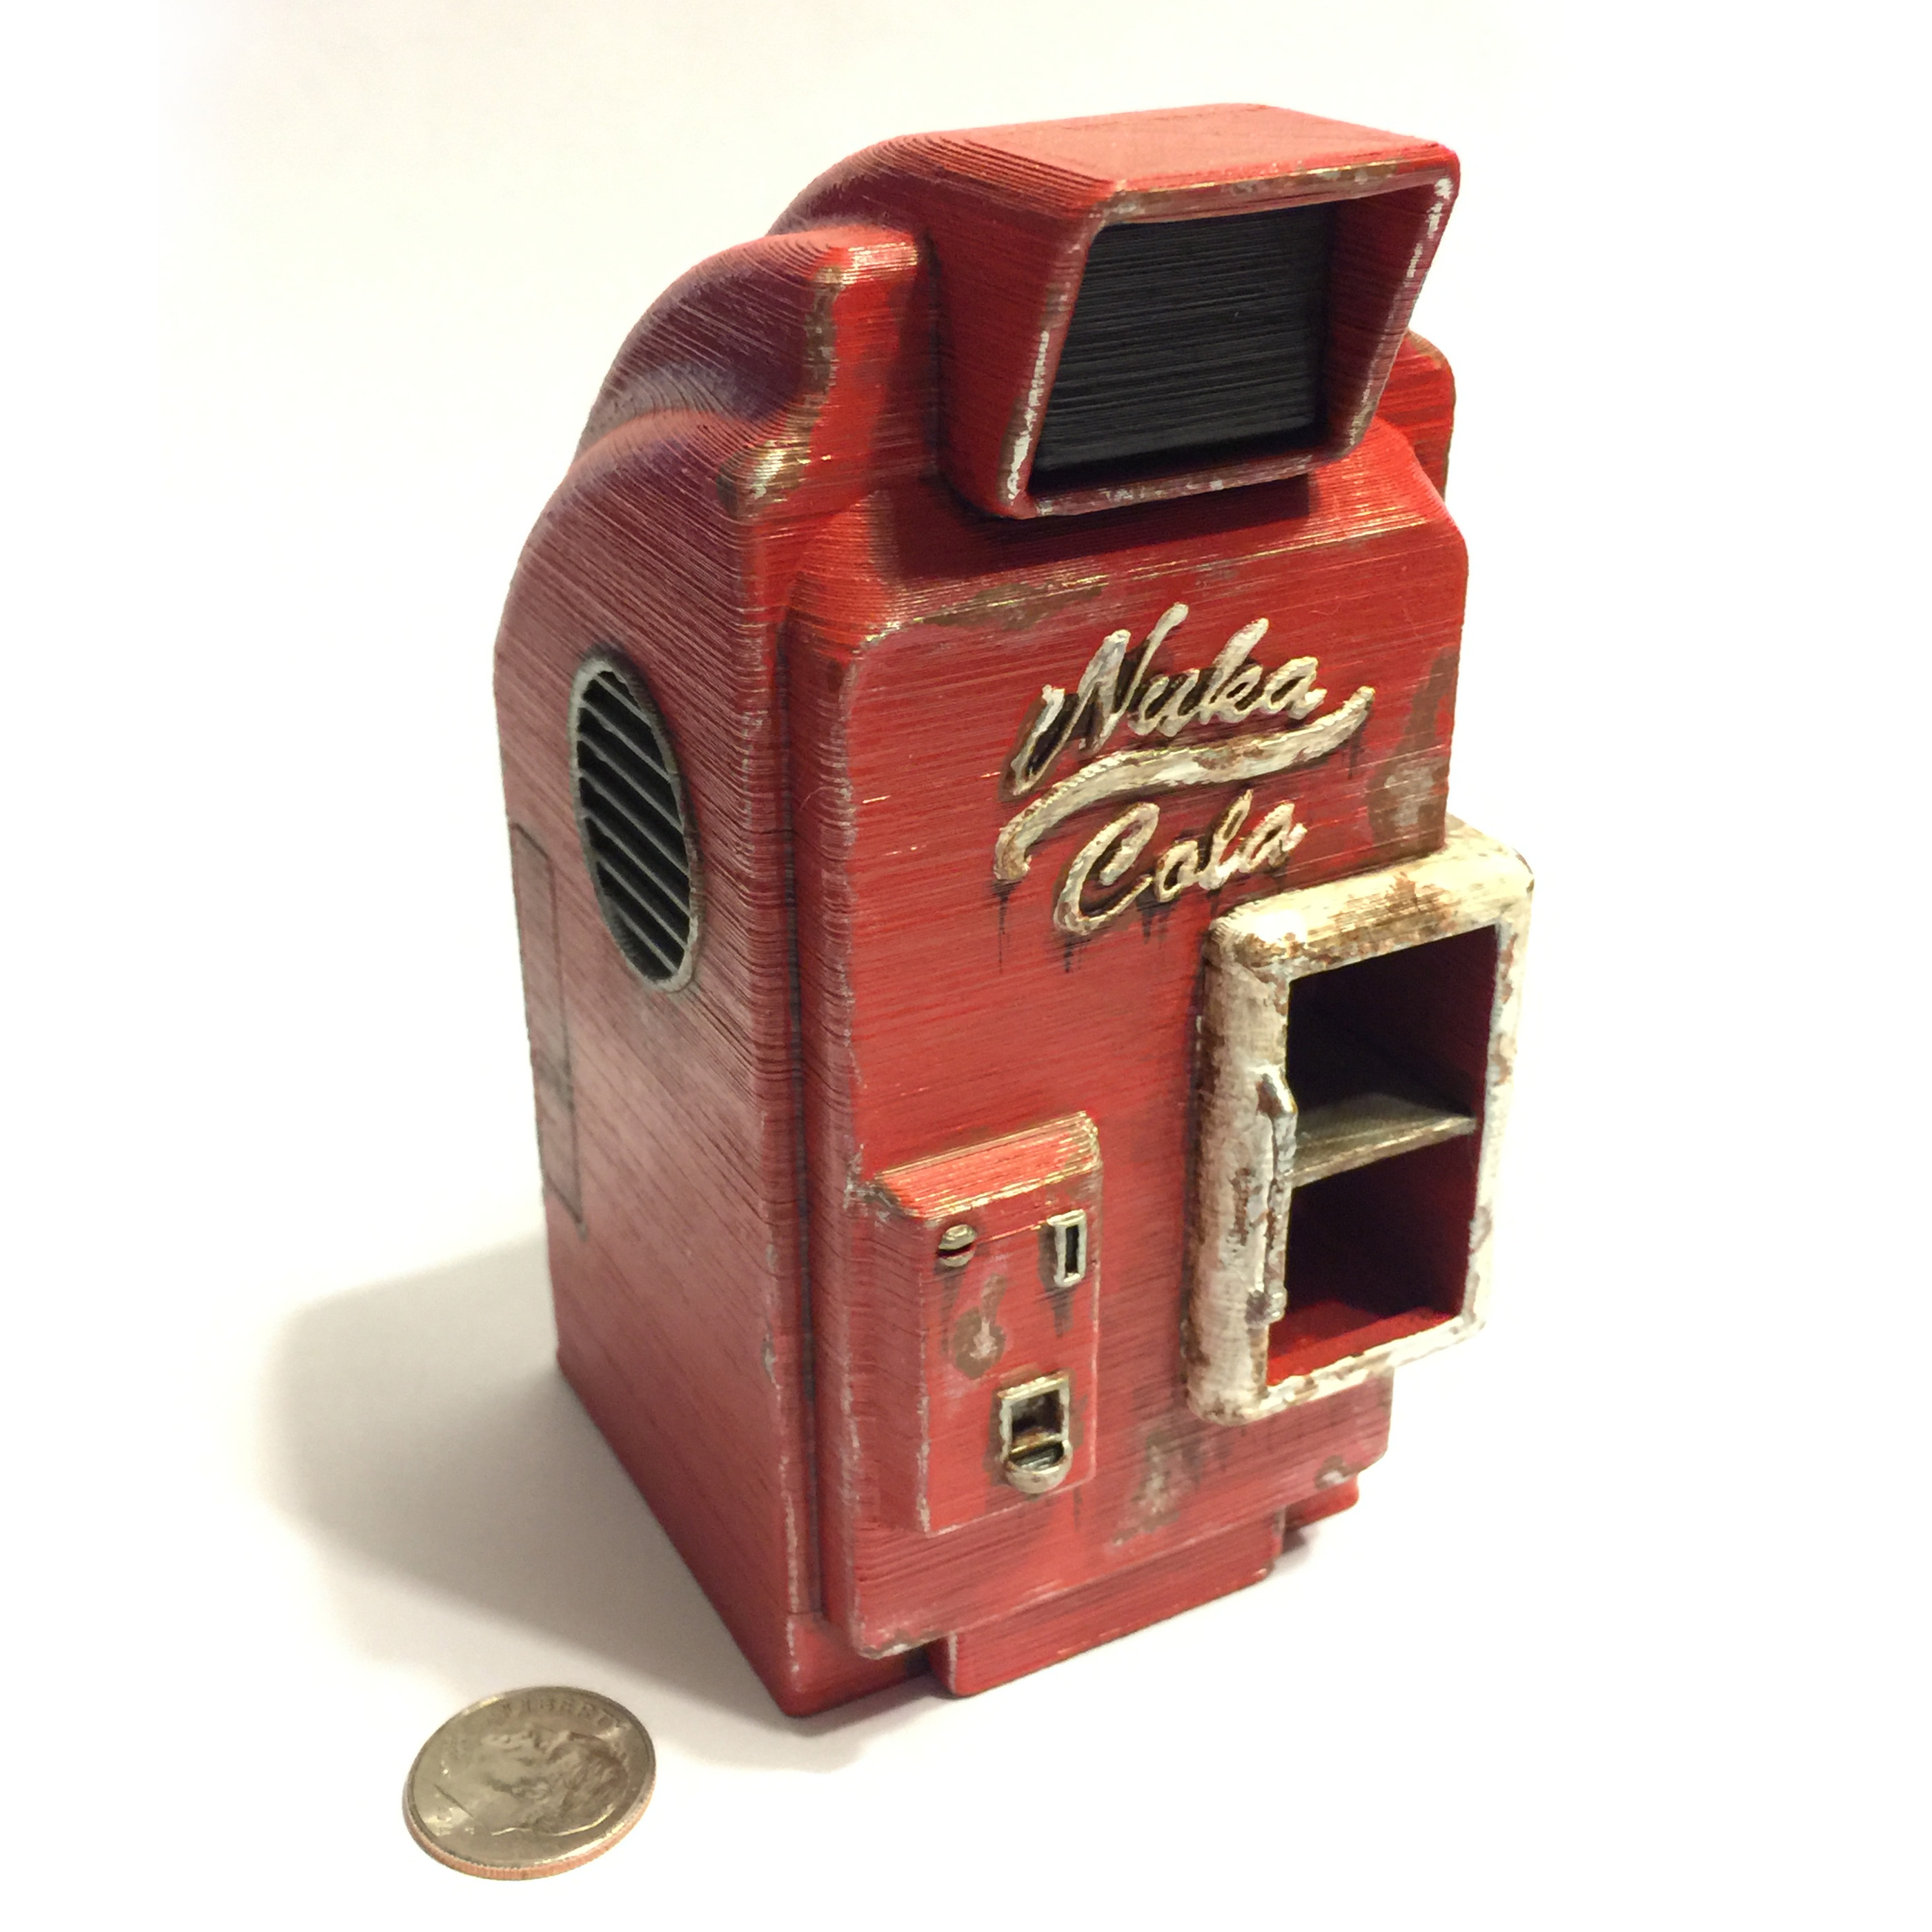 Fallout 4 Nuka-Cola Machine (1:18 Scale) with Nuka-Cola Bottle